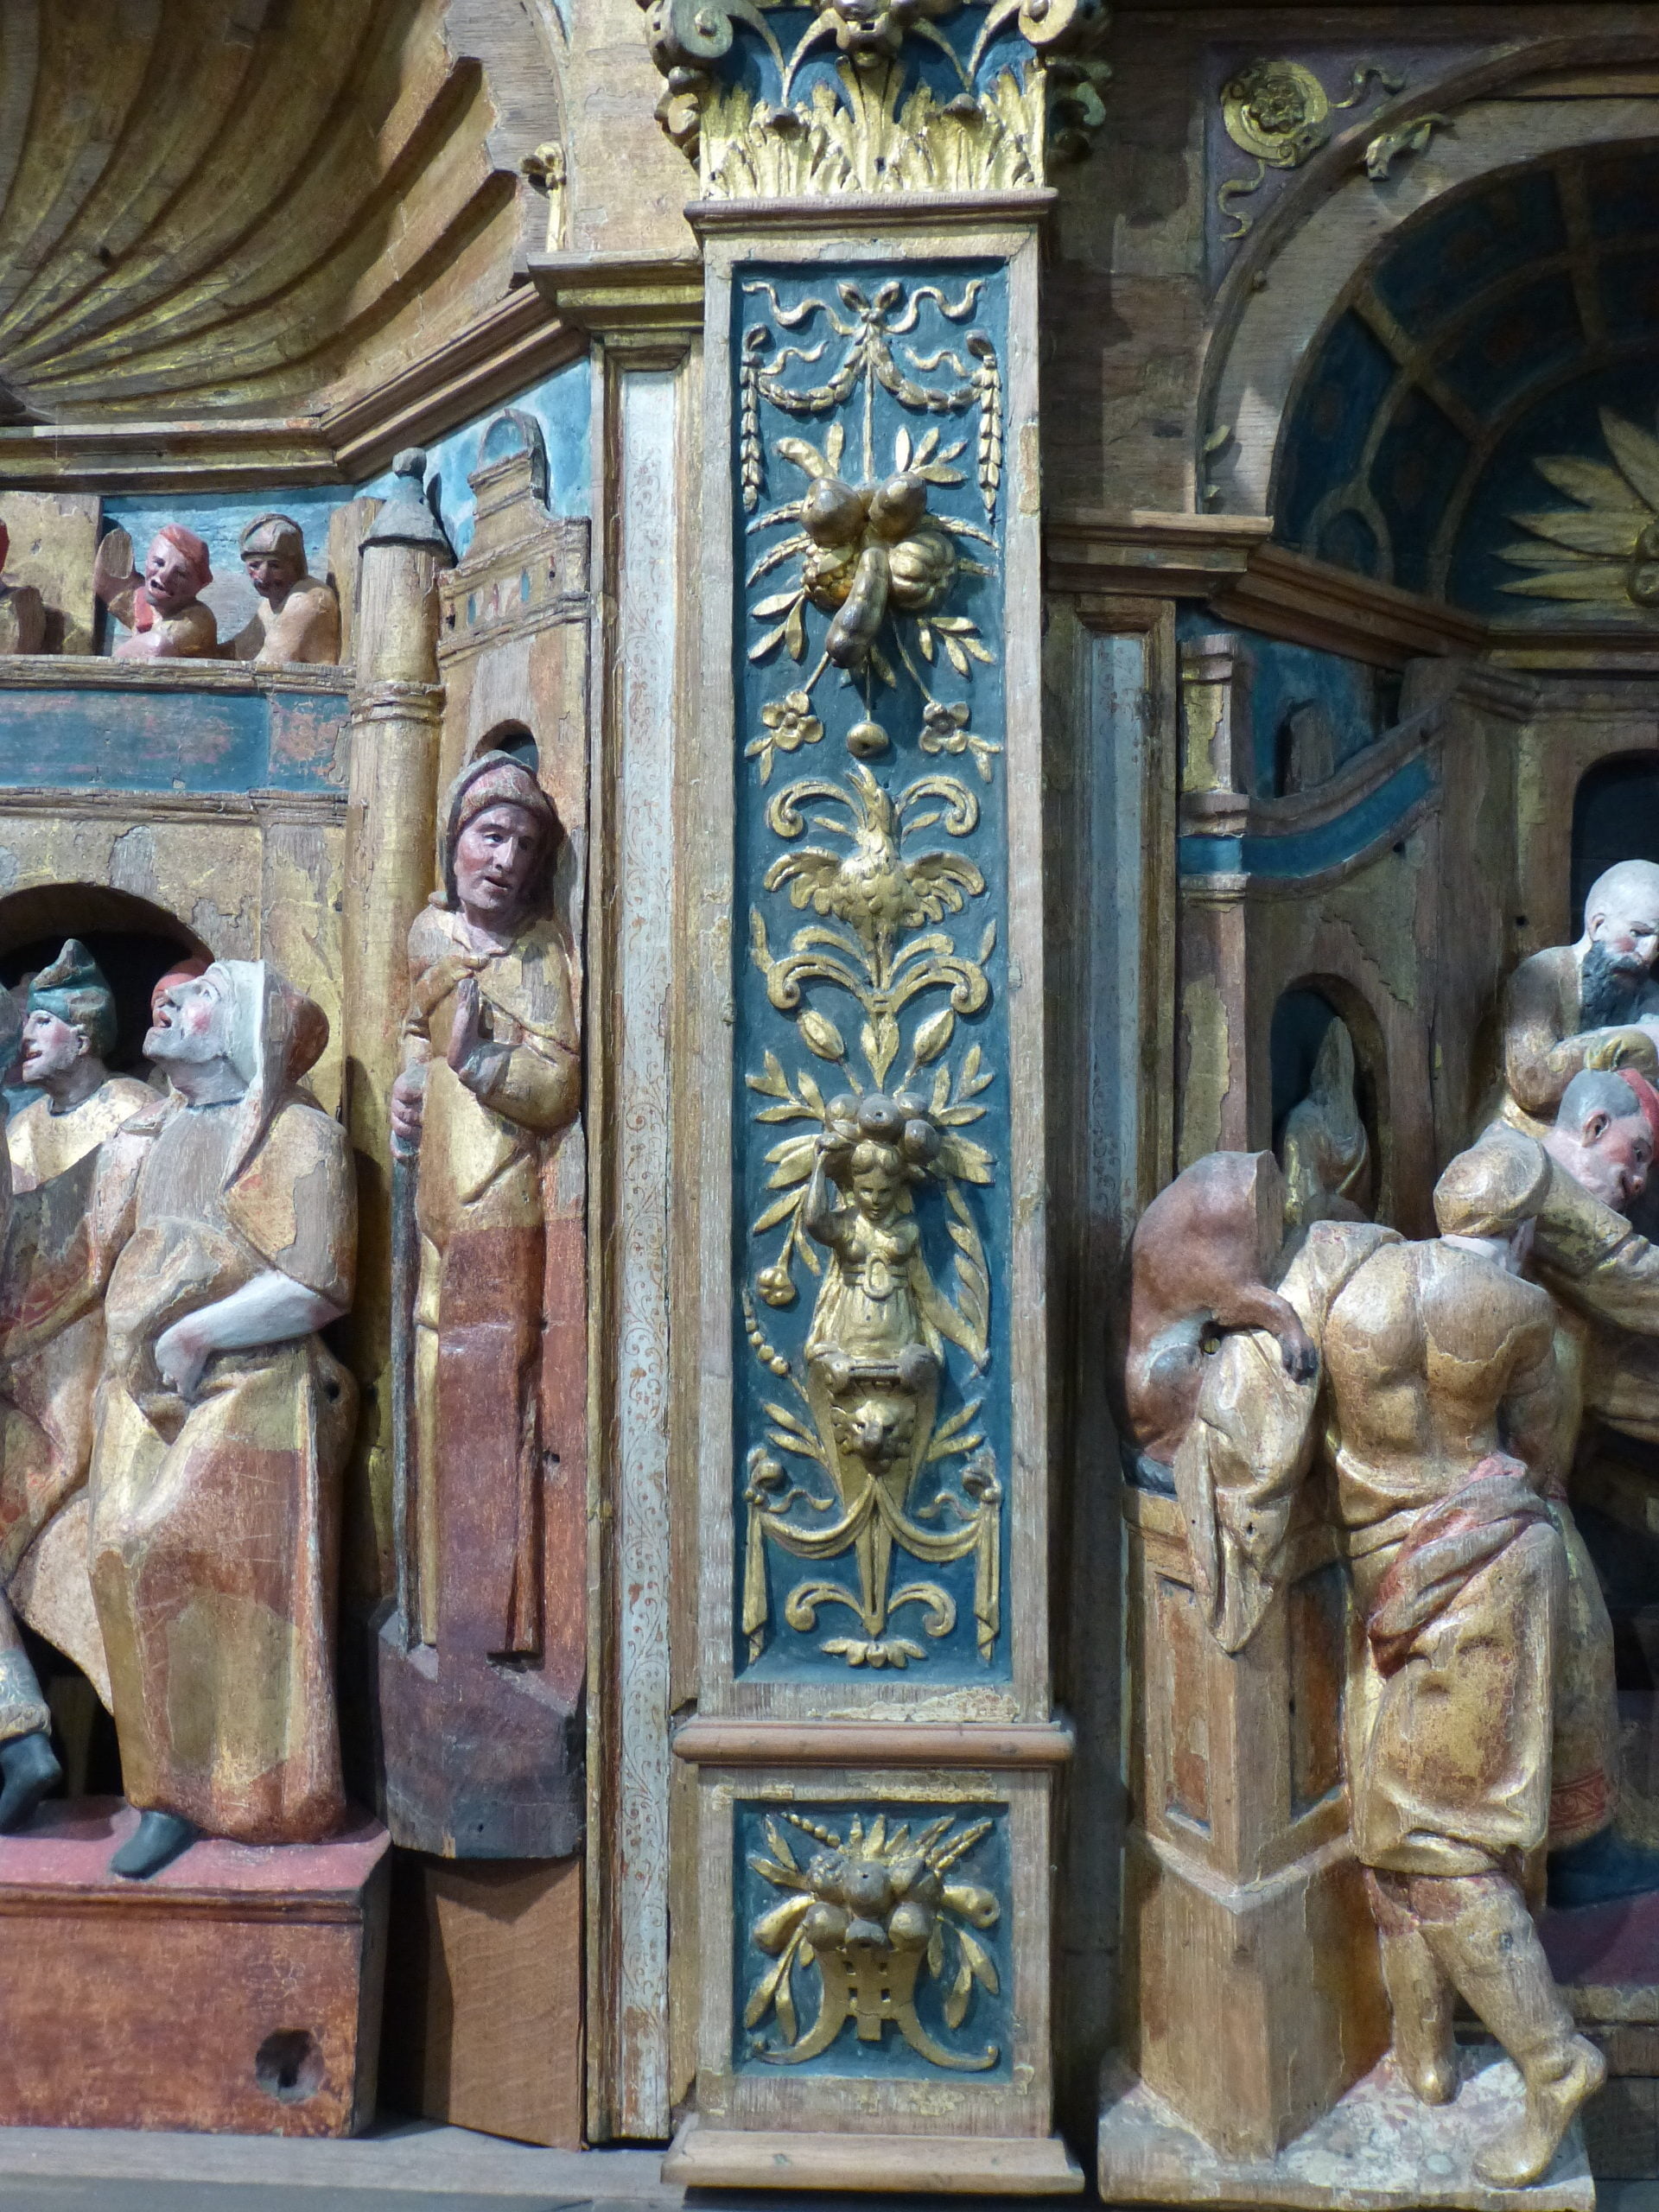 Fig. 4. Retable de la Passion. Chêne sculpté et polychromé. 355 x 257 x 35 cm. Bouvignes-sur-Meuse (Belgique). Église Saint-Lambert. 1555-1556. Pilastre (Photo ©Charlotte Hance, 04/03/2017).